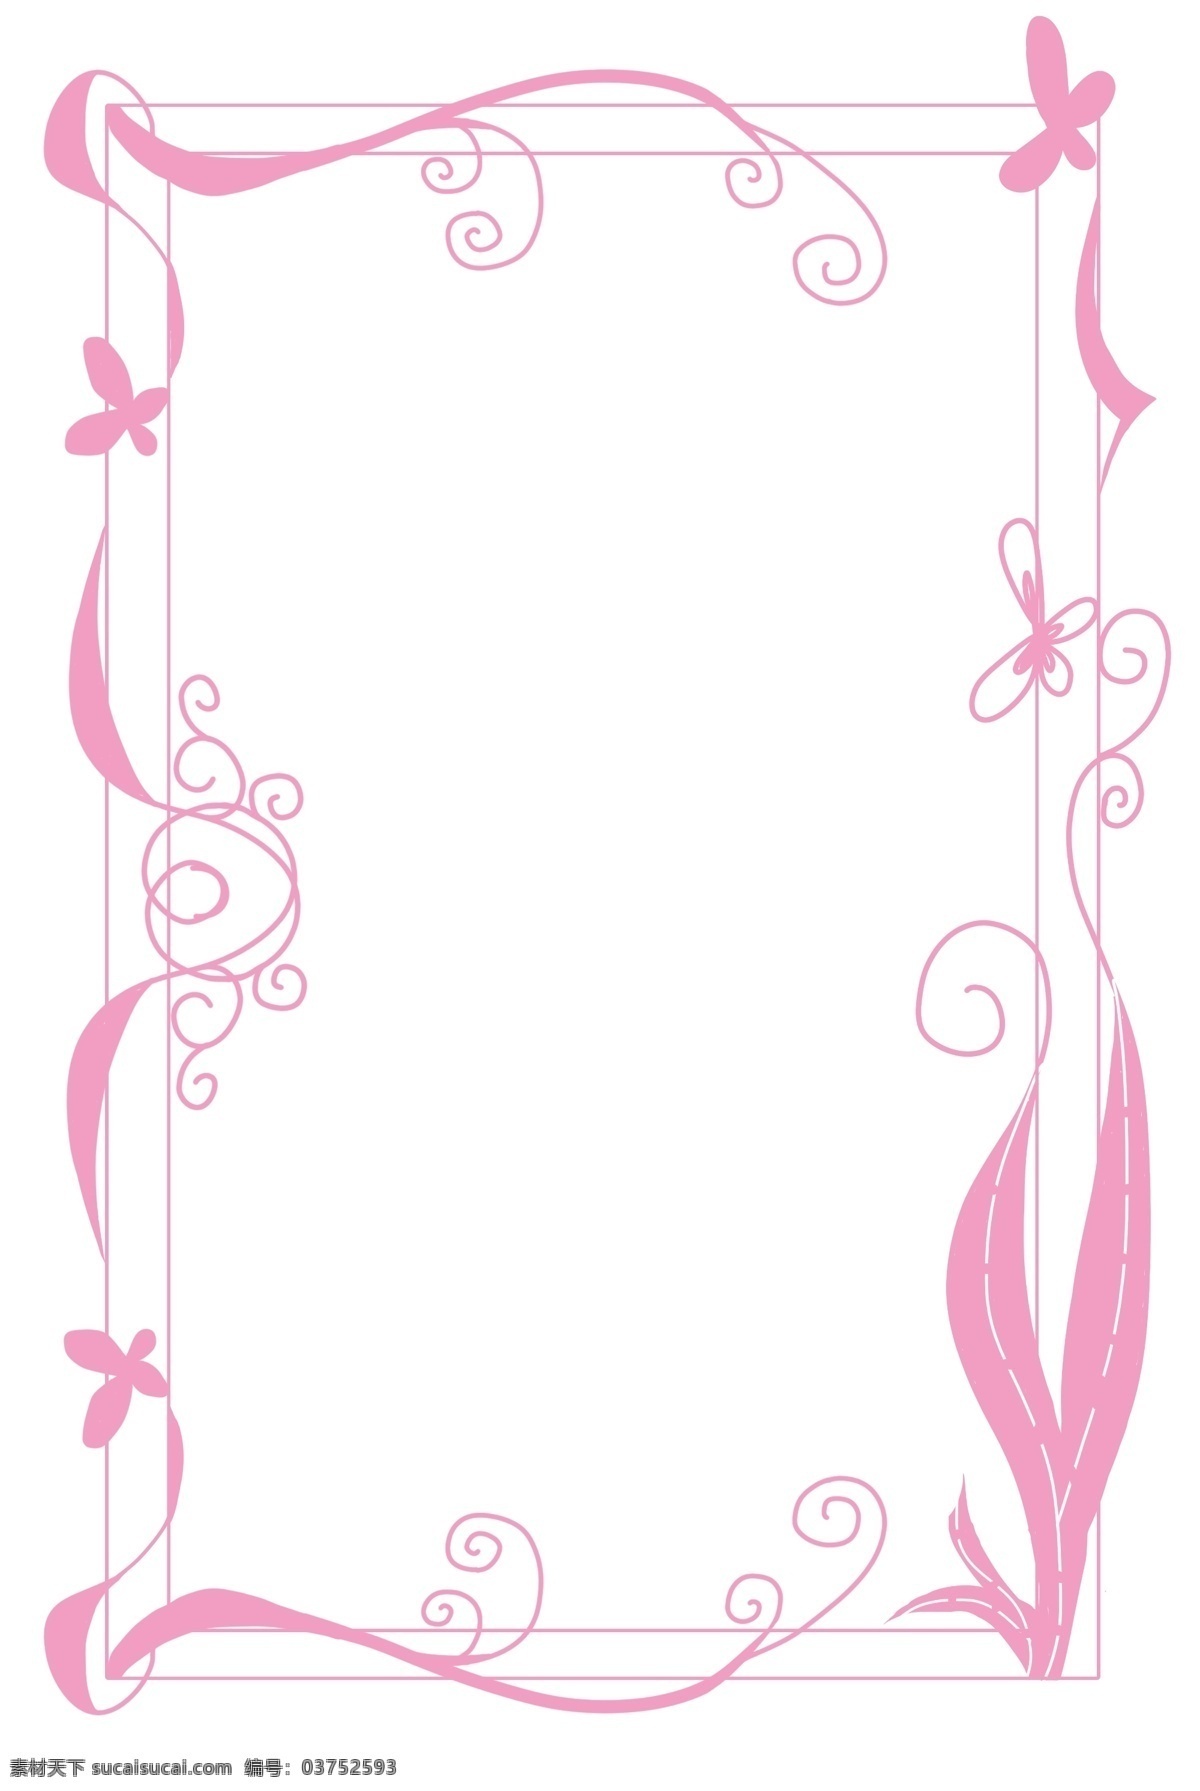 浪漫 粉红色 花 藤 边框 手绘 简约线条 少女风 装饰 花纹 边饰 免扣 清新自然 可爱